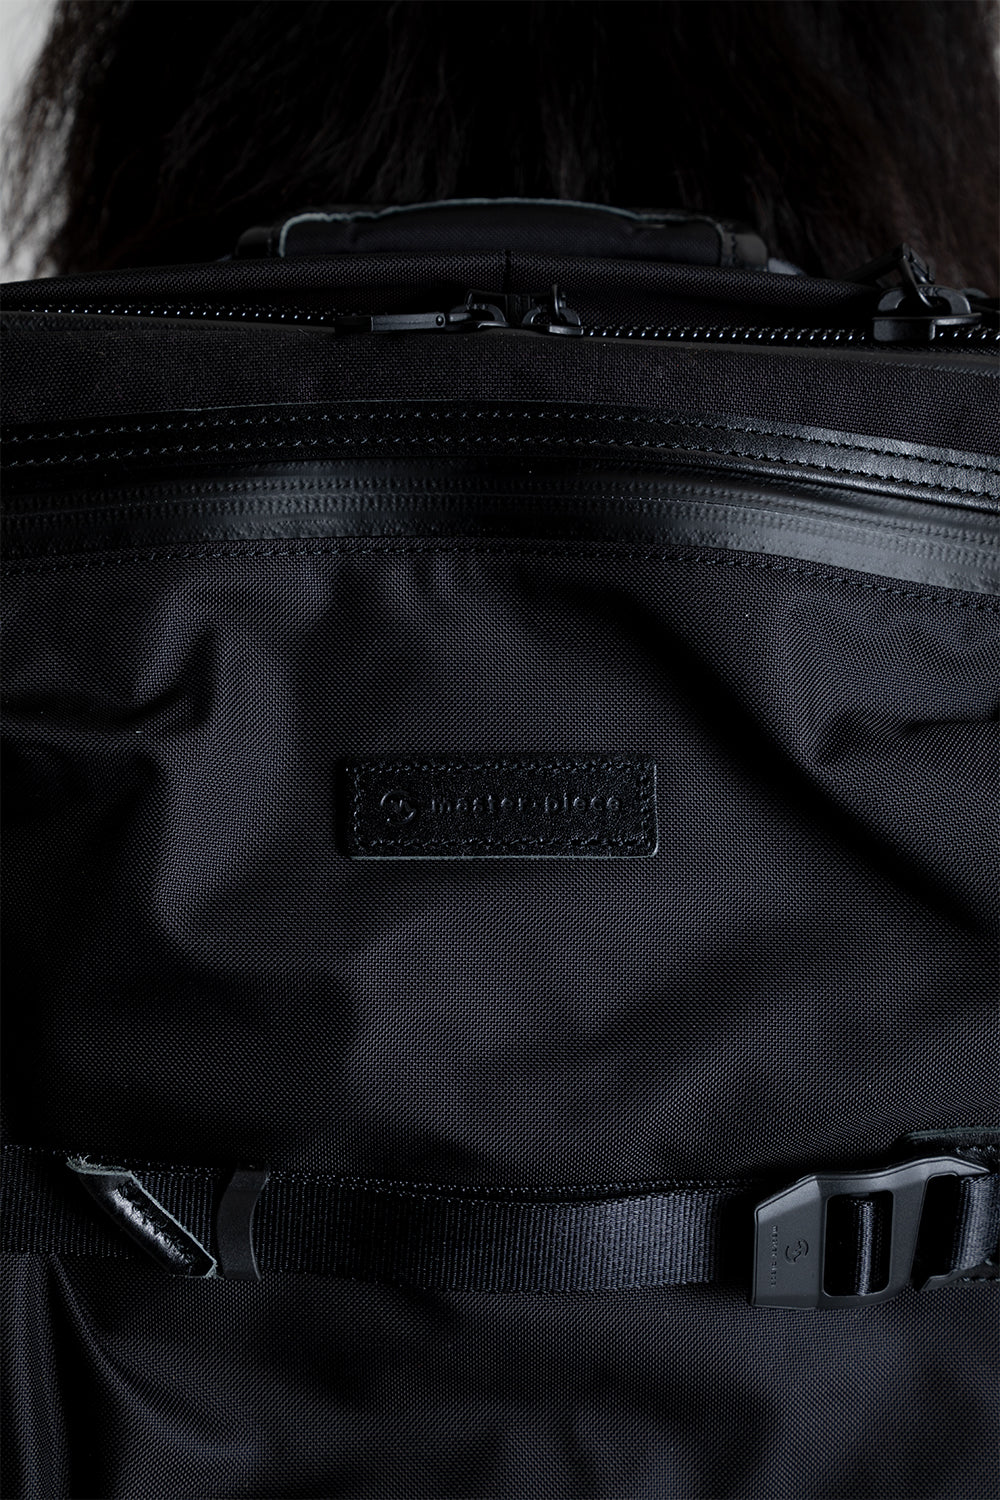 Master-Piece POTENTIAL-V3 Backpack in Black